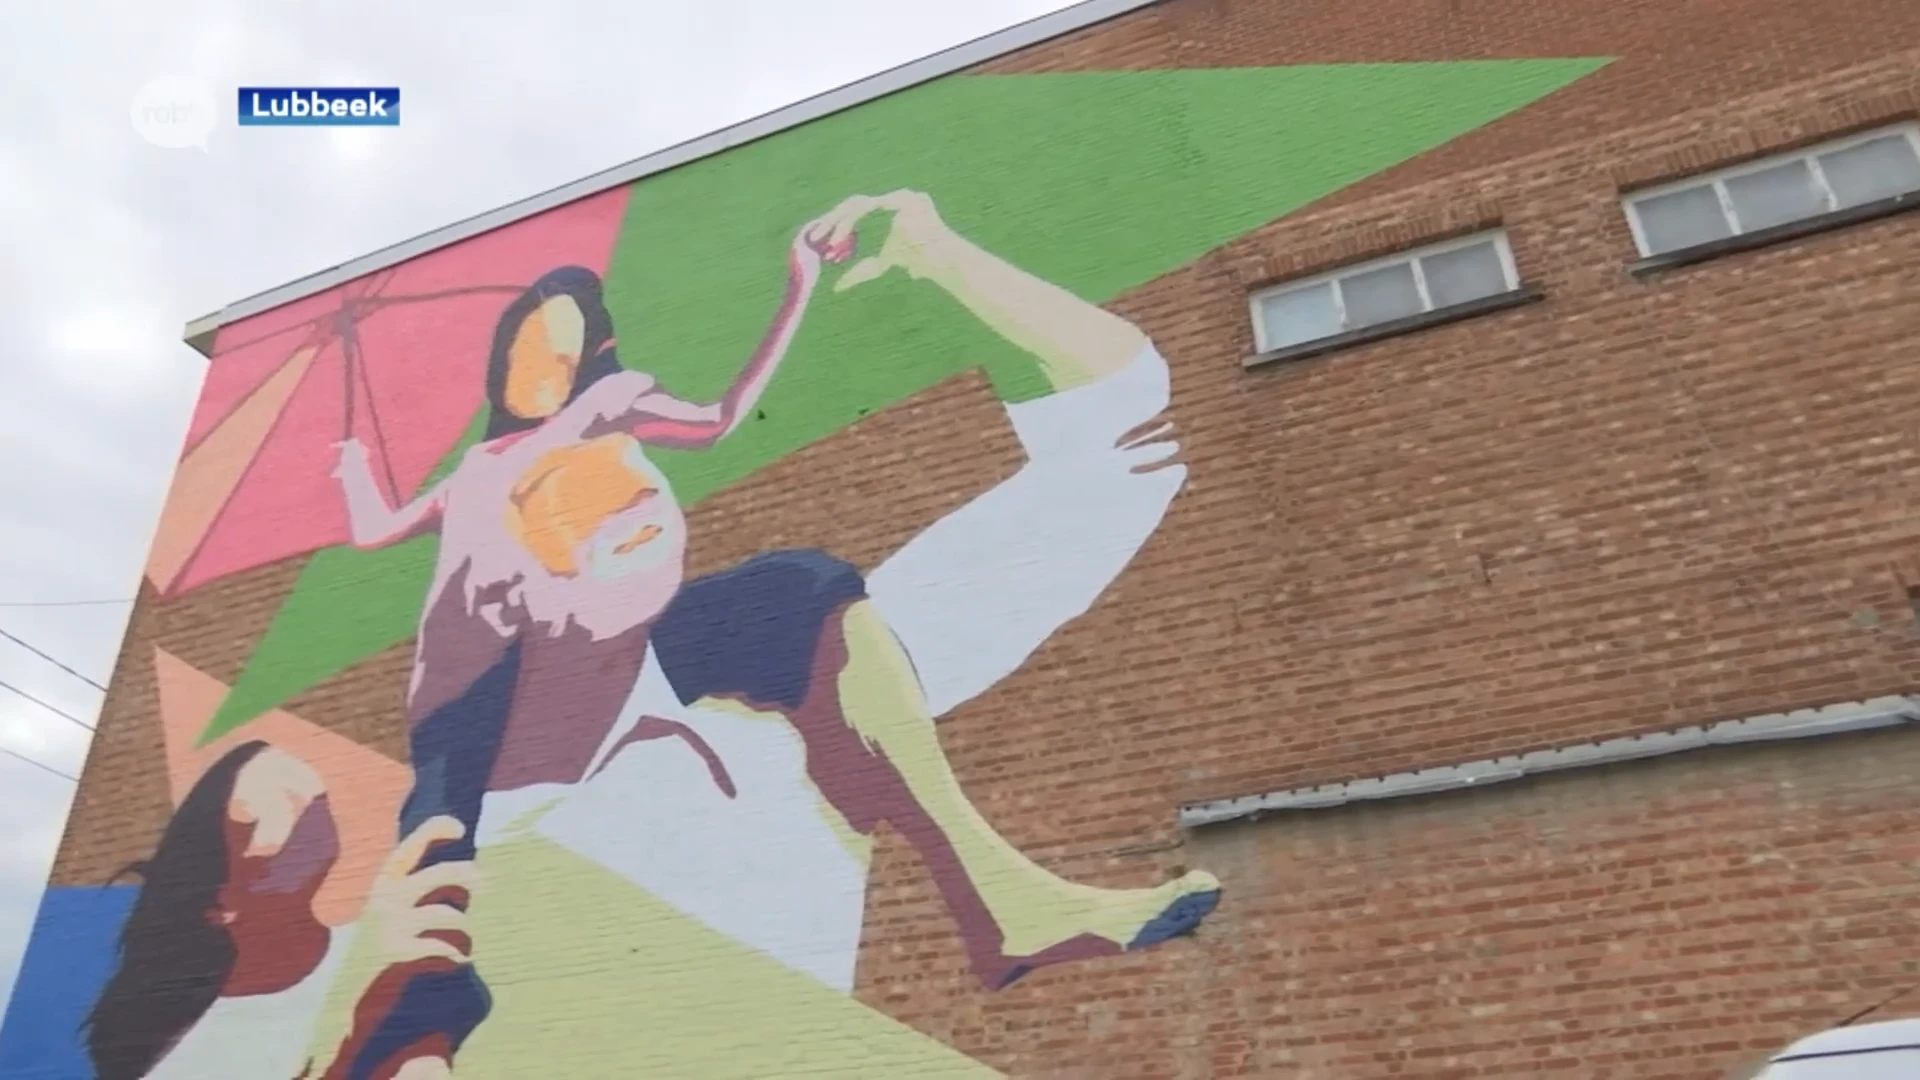 "Vaders paraplu" is eerste streetart schilderij in Lubbeek: "Staat metafoor voor inclusieve samenleving"